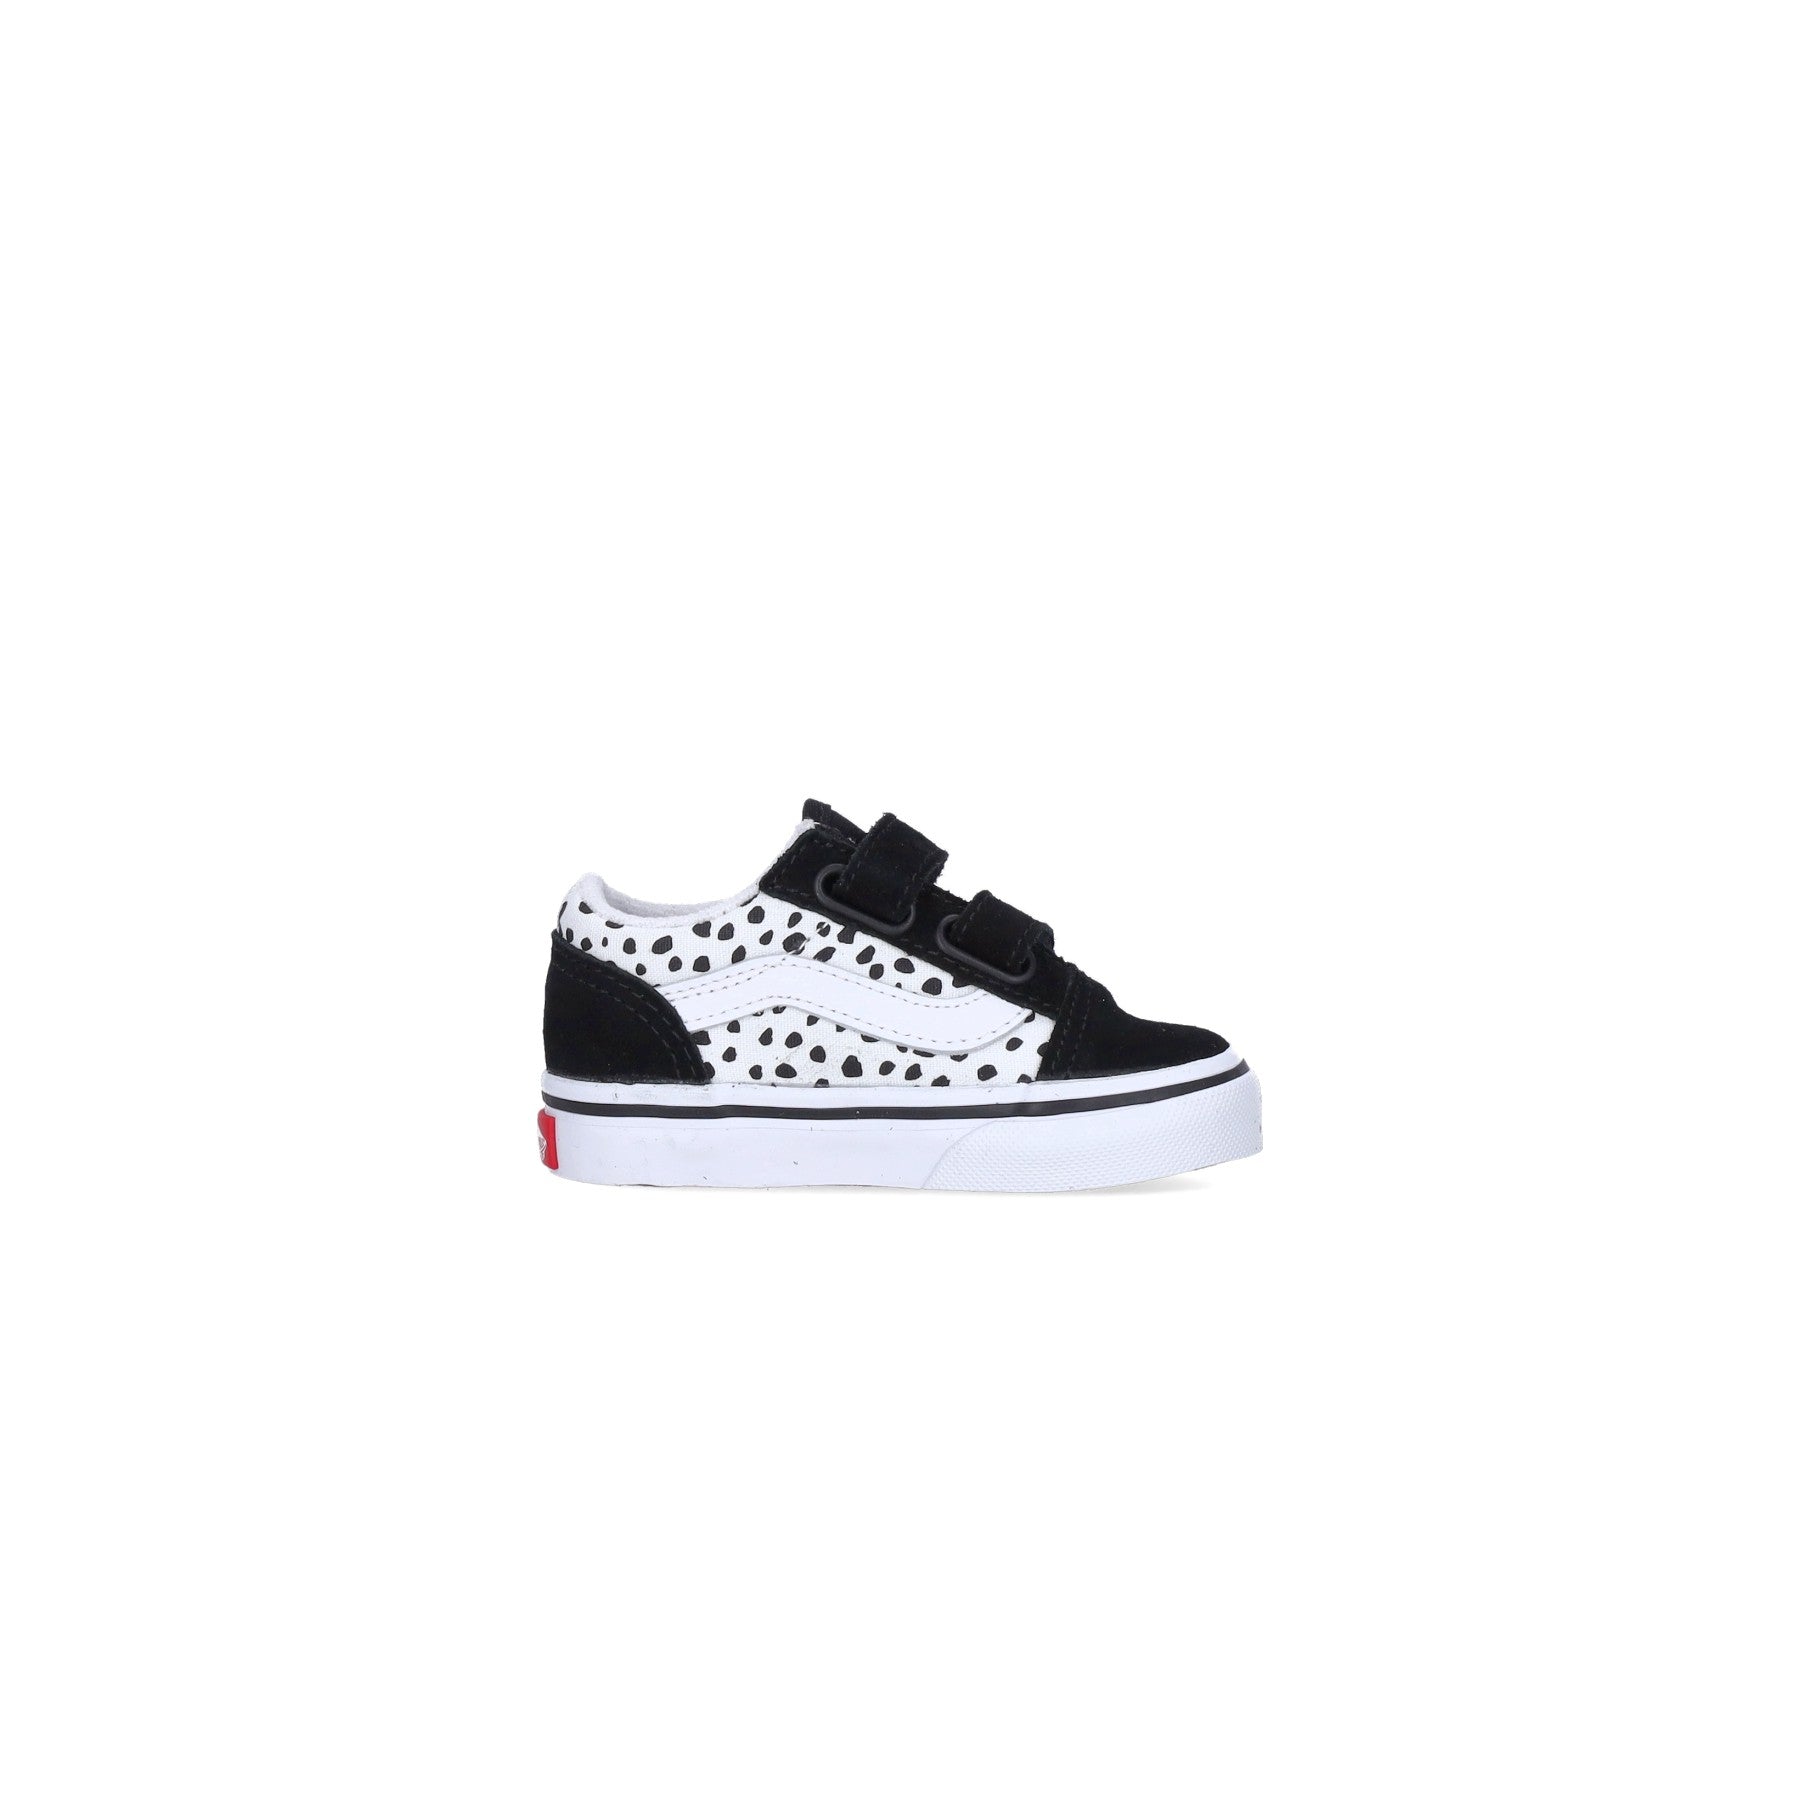 Low Shoe Girl Old Skool V (dalmatian) Black/true White